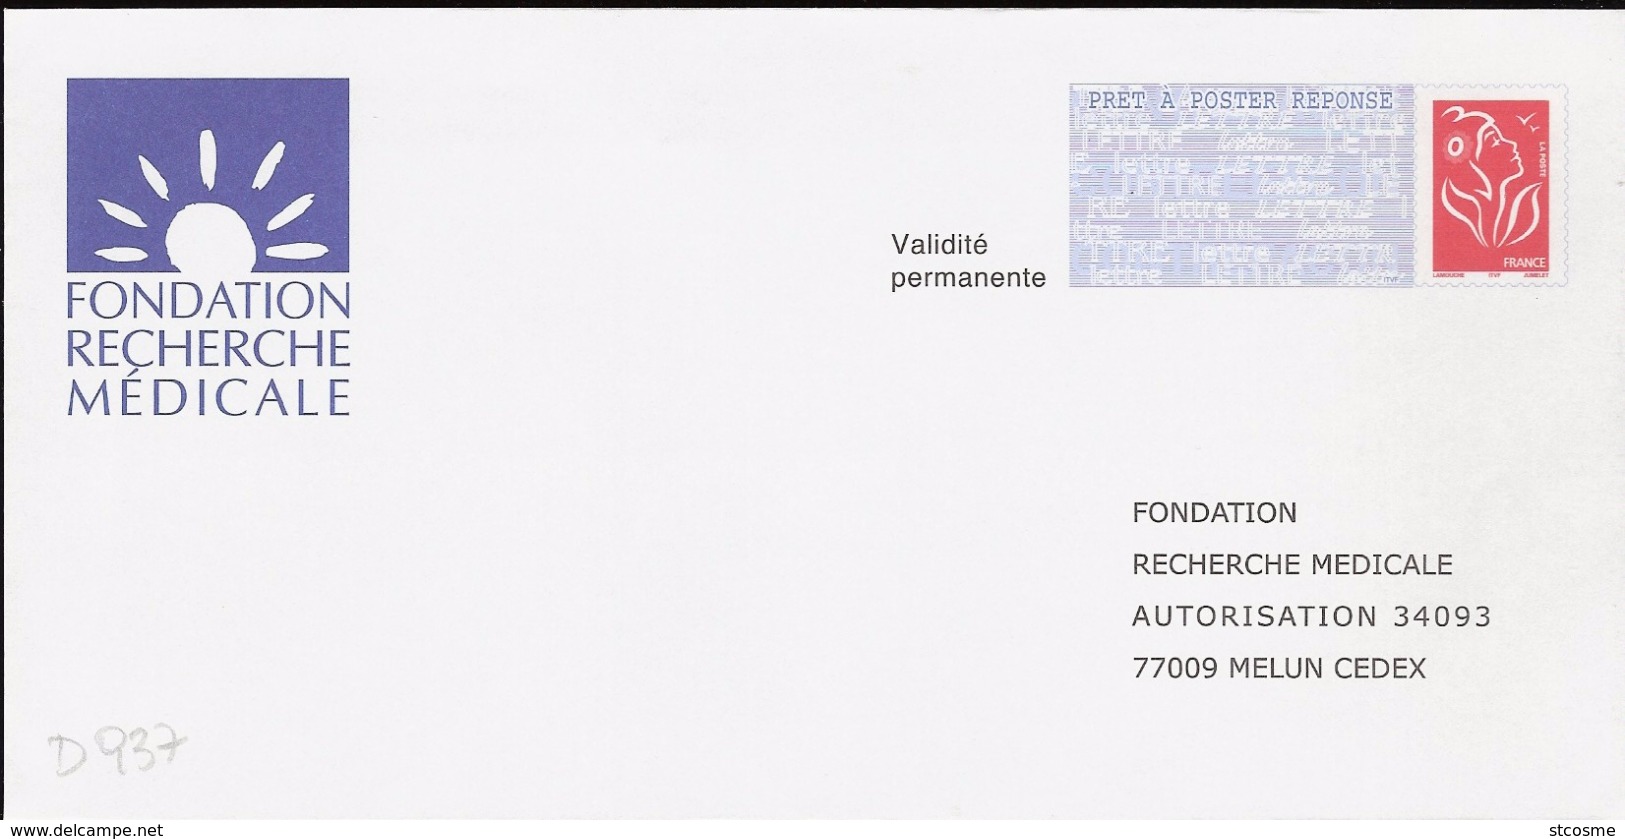 D0937 - Entier / Stationery / PSE - PAP Réponse Lamouche - Fondation Recherche Médicale - Prêts-à-poster: Réponse /Lamouche